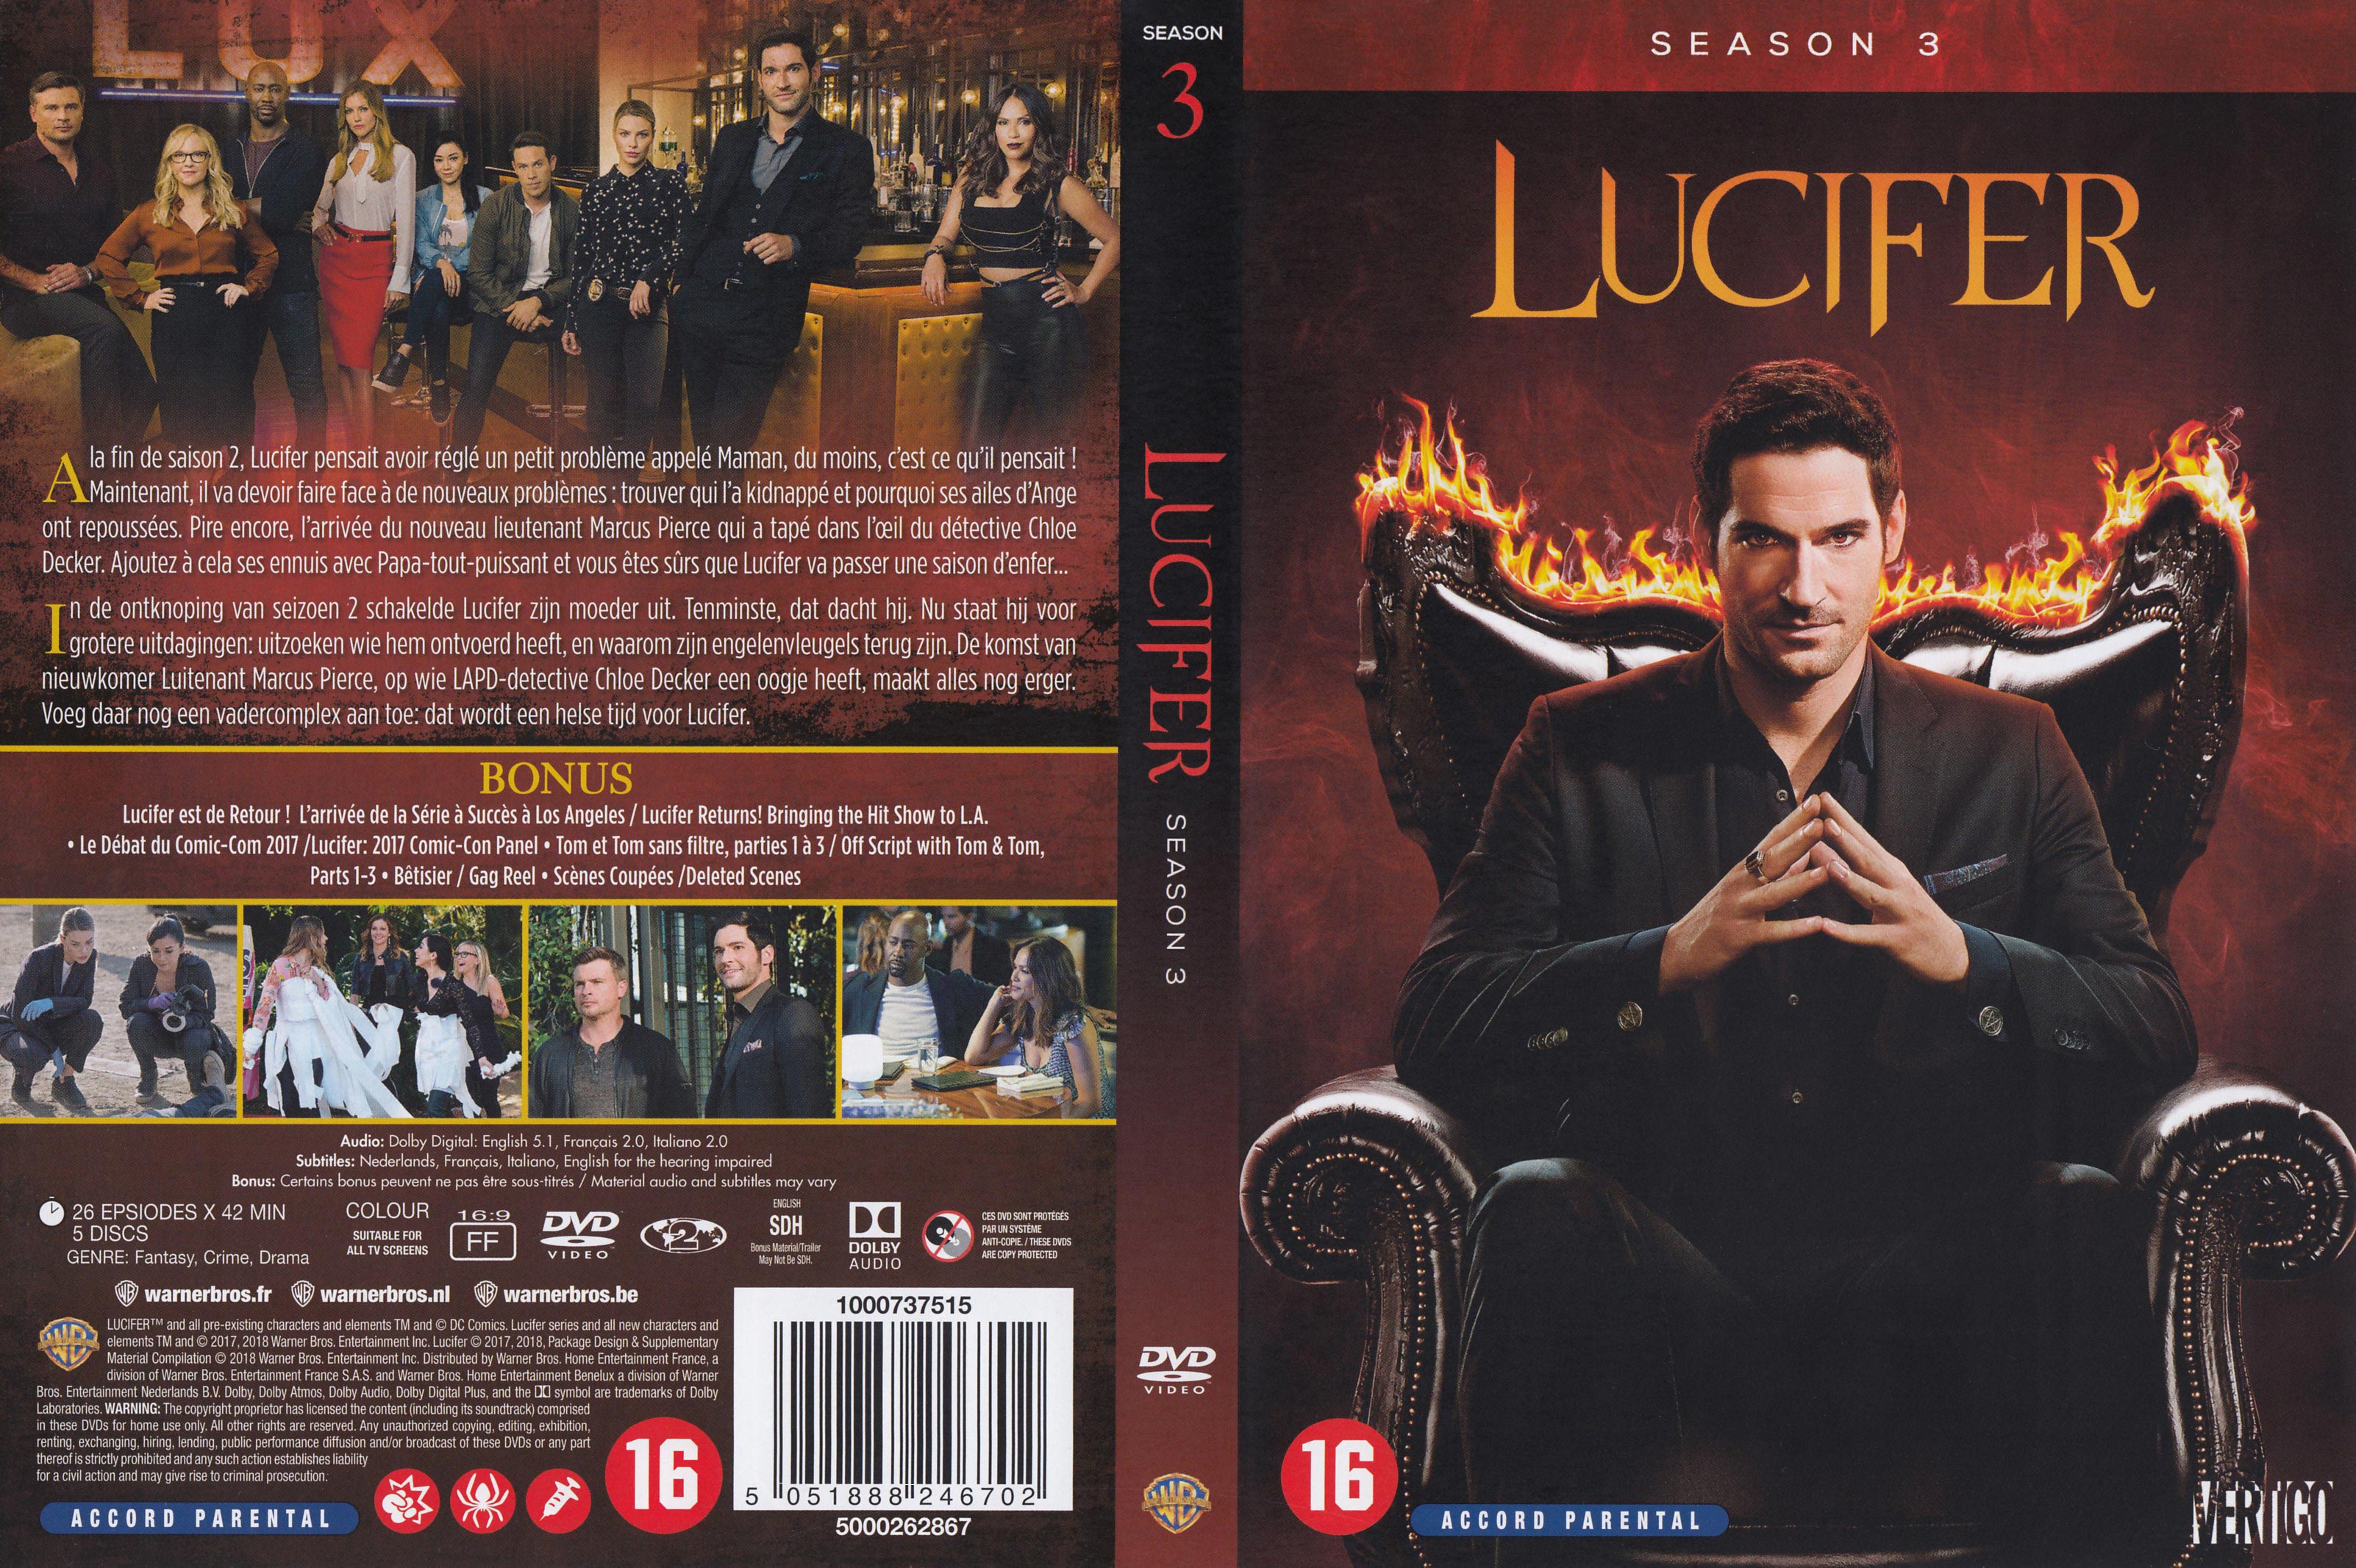 Jaquette DVD Lucifer Saison 3